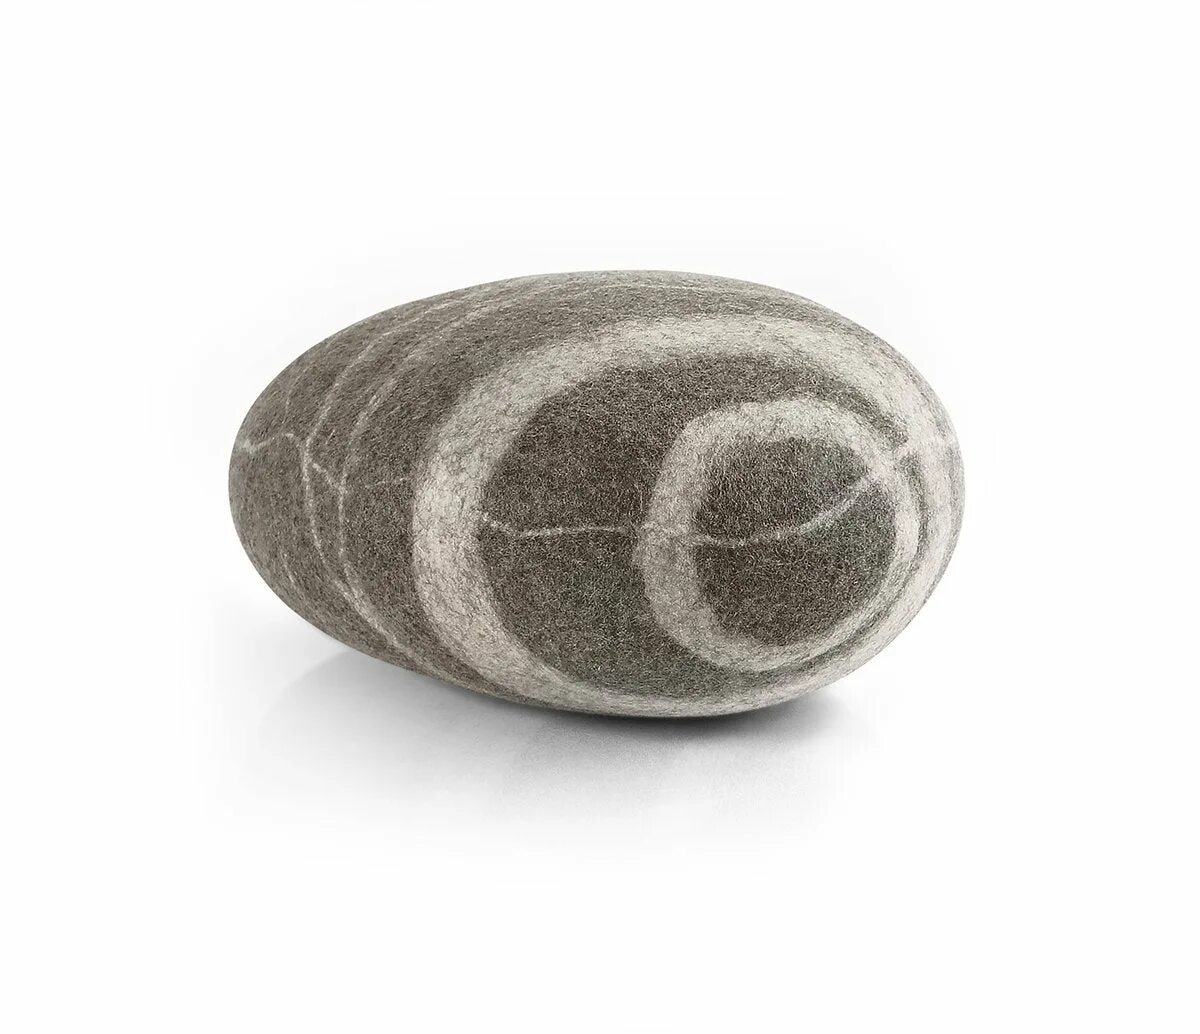 Felt stone. Katsu камни пуфы. Katsu камни валяные. Stone Rock Wool Pouf. Пуфы камни из Войлока.